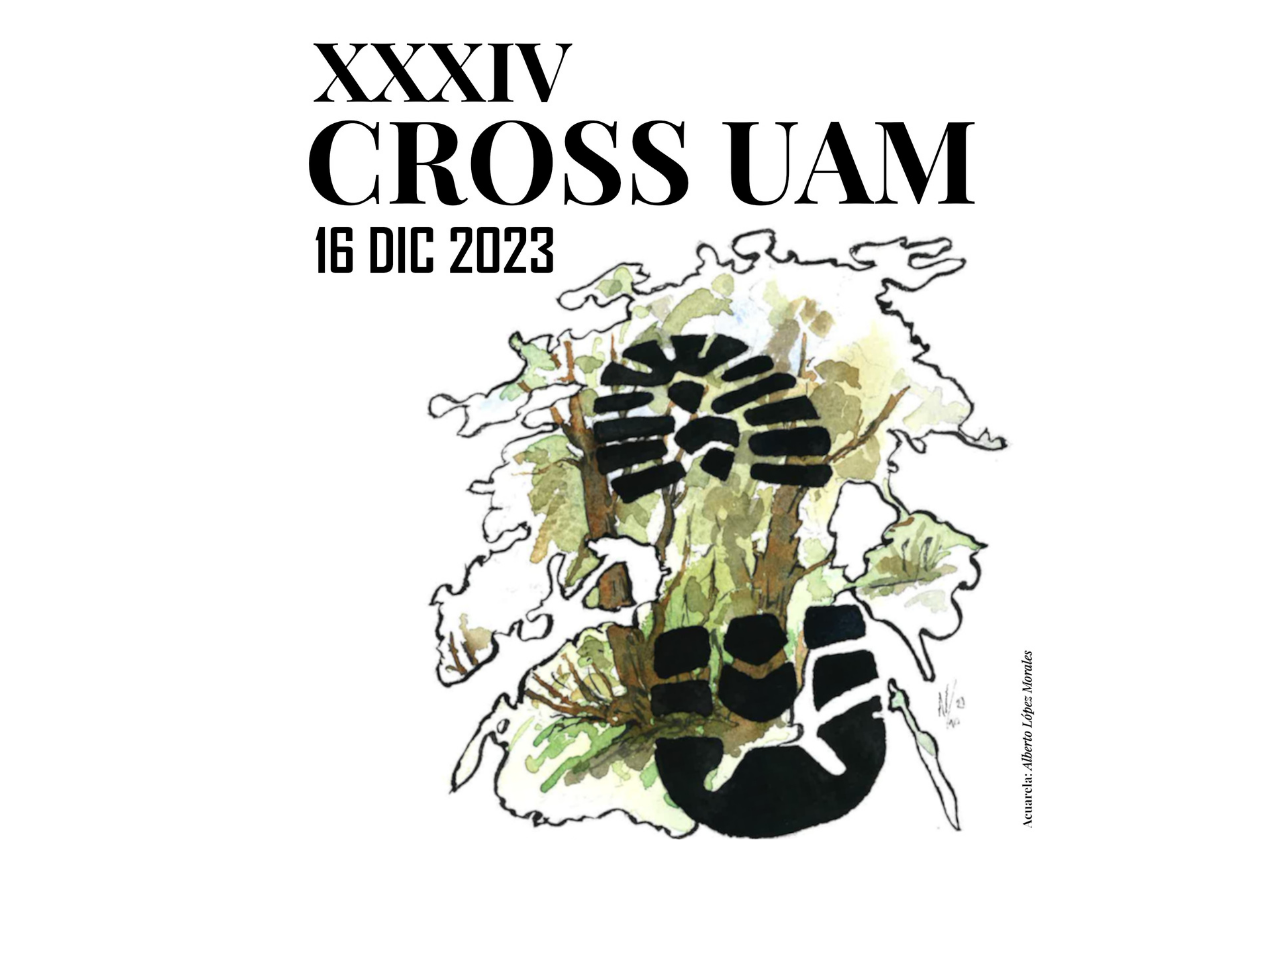 Logo XXIV Cross con la imagen de una huella de zapato